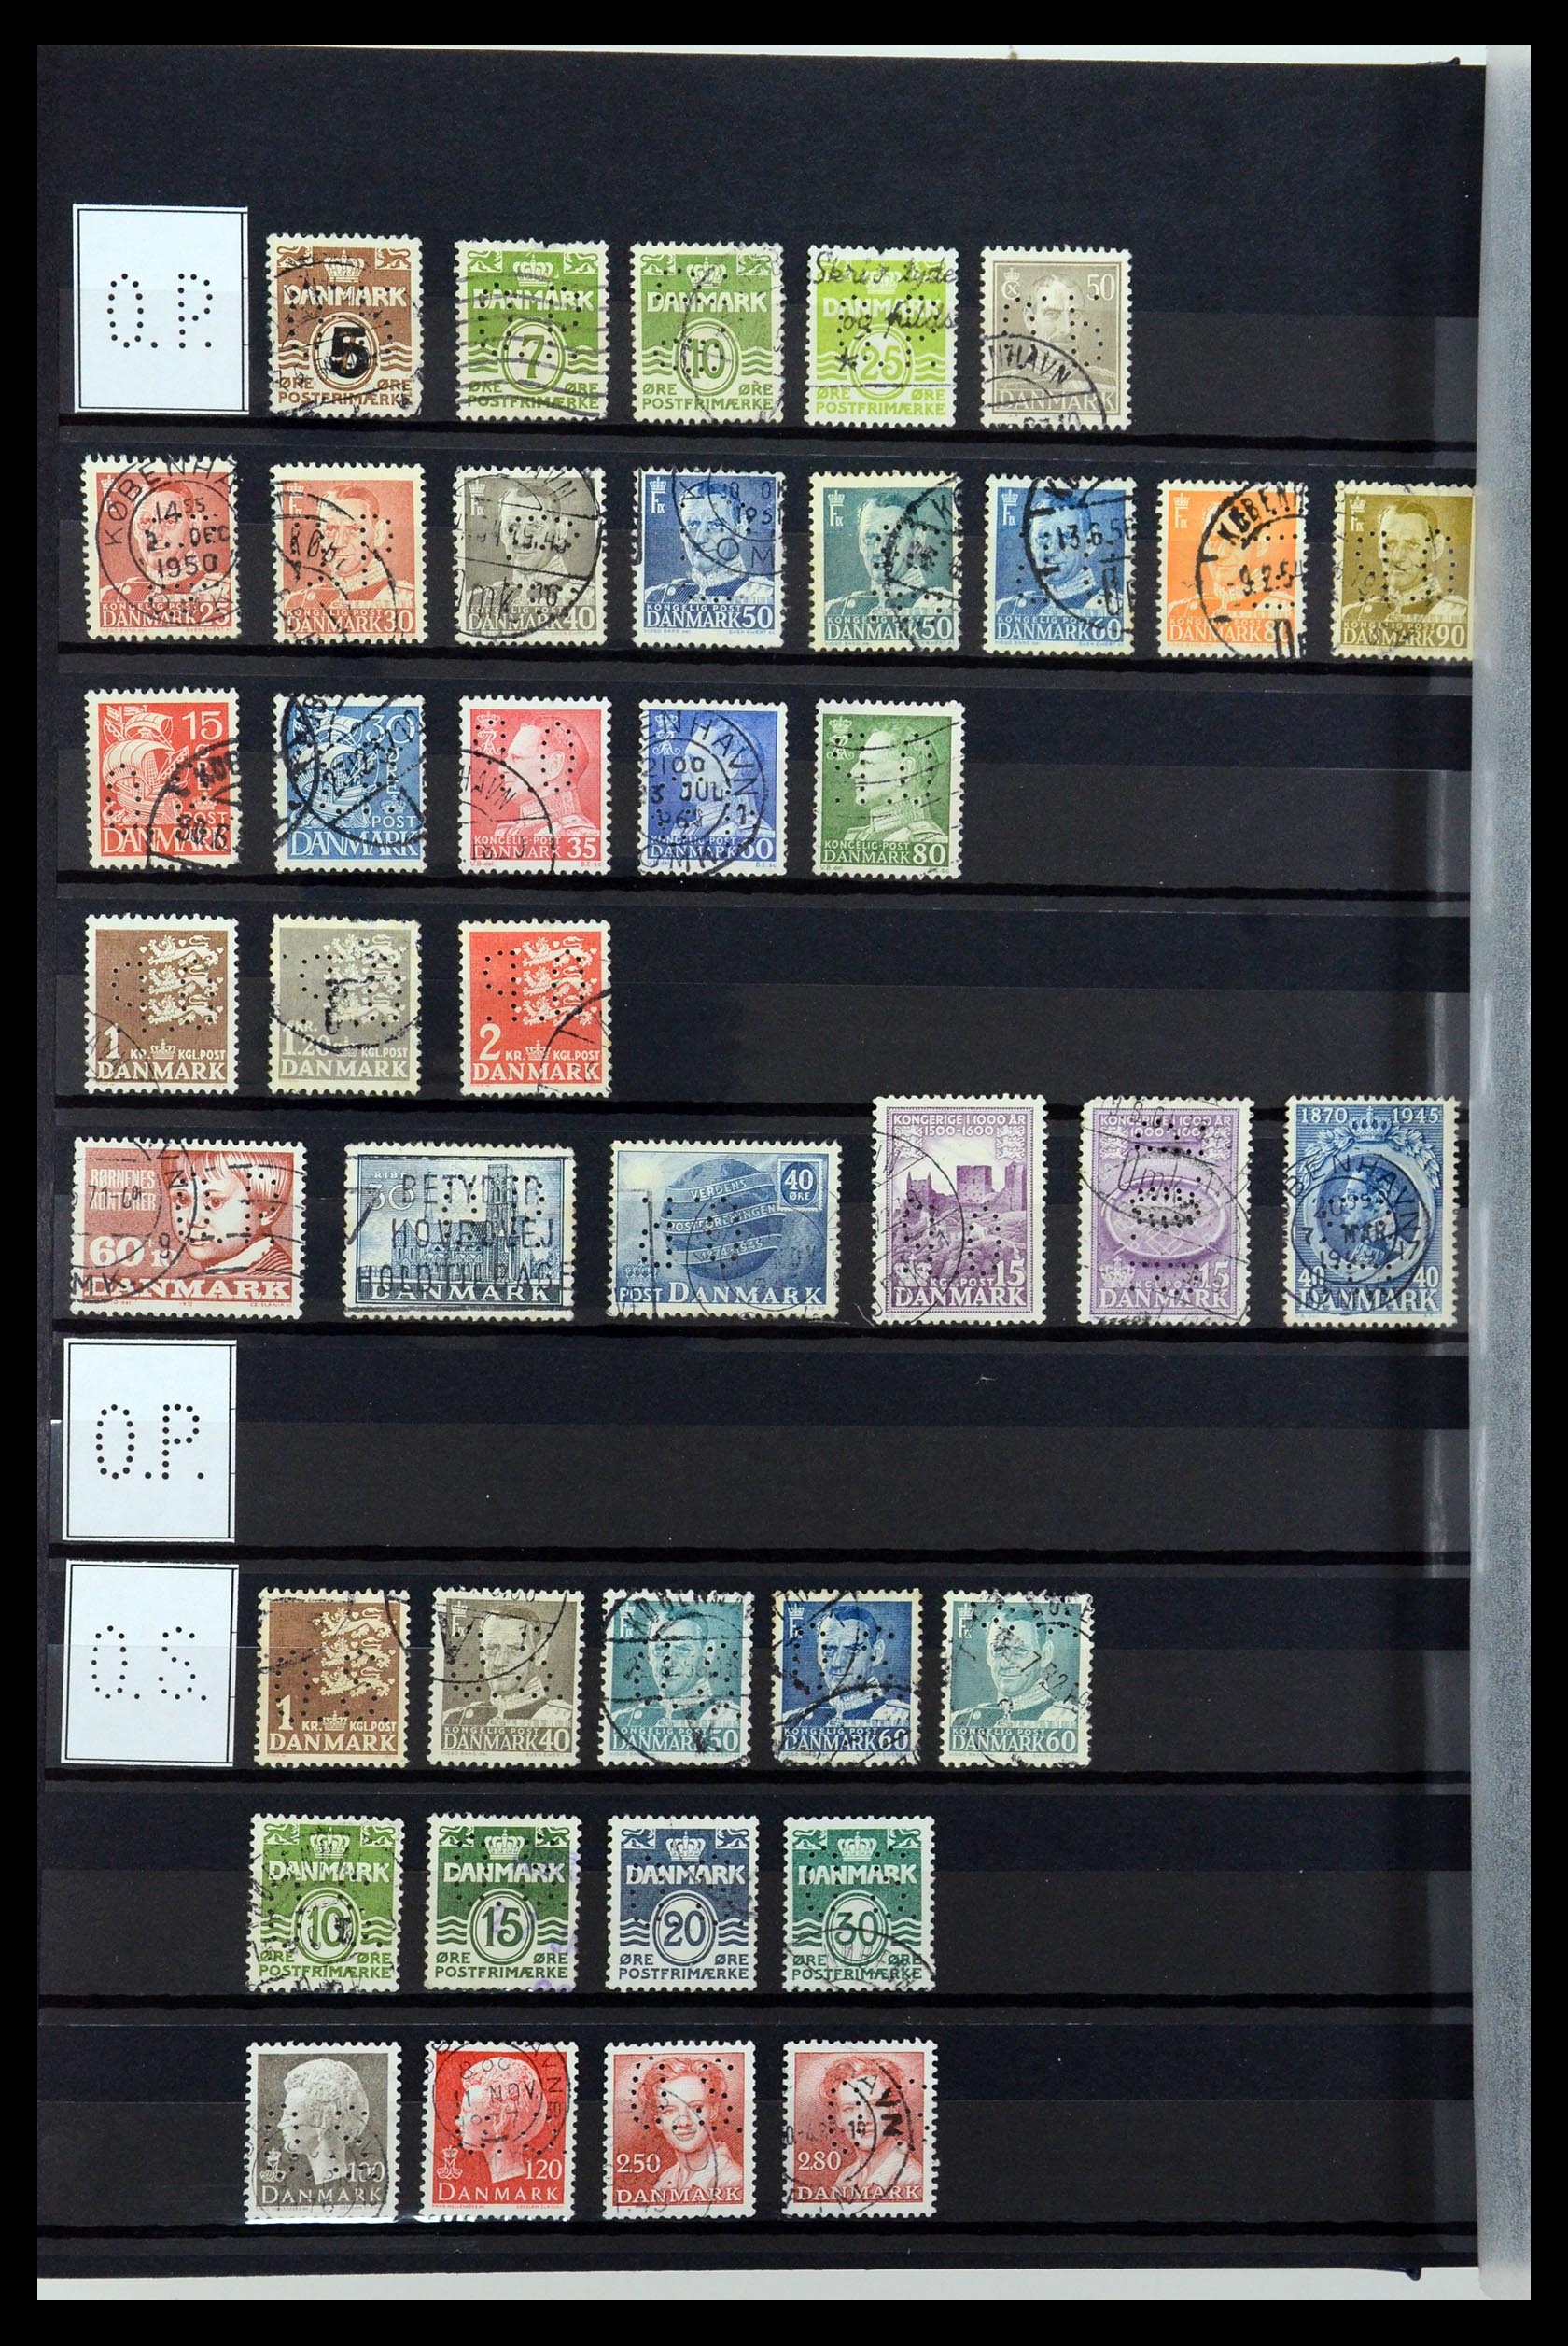 36396 187 - Postzegelverzameling 36396 Denemarken perfins.